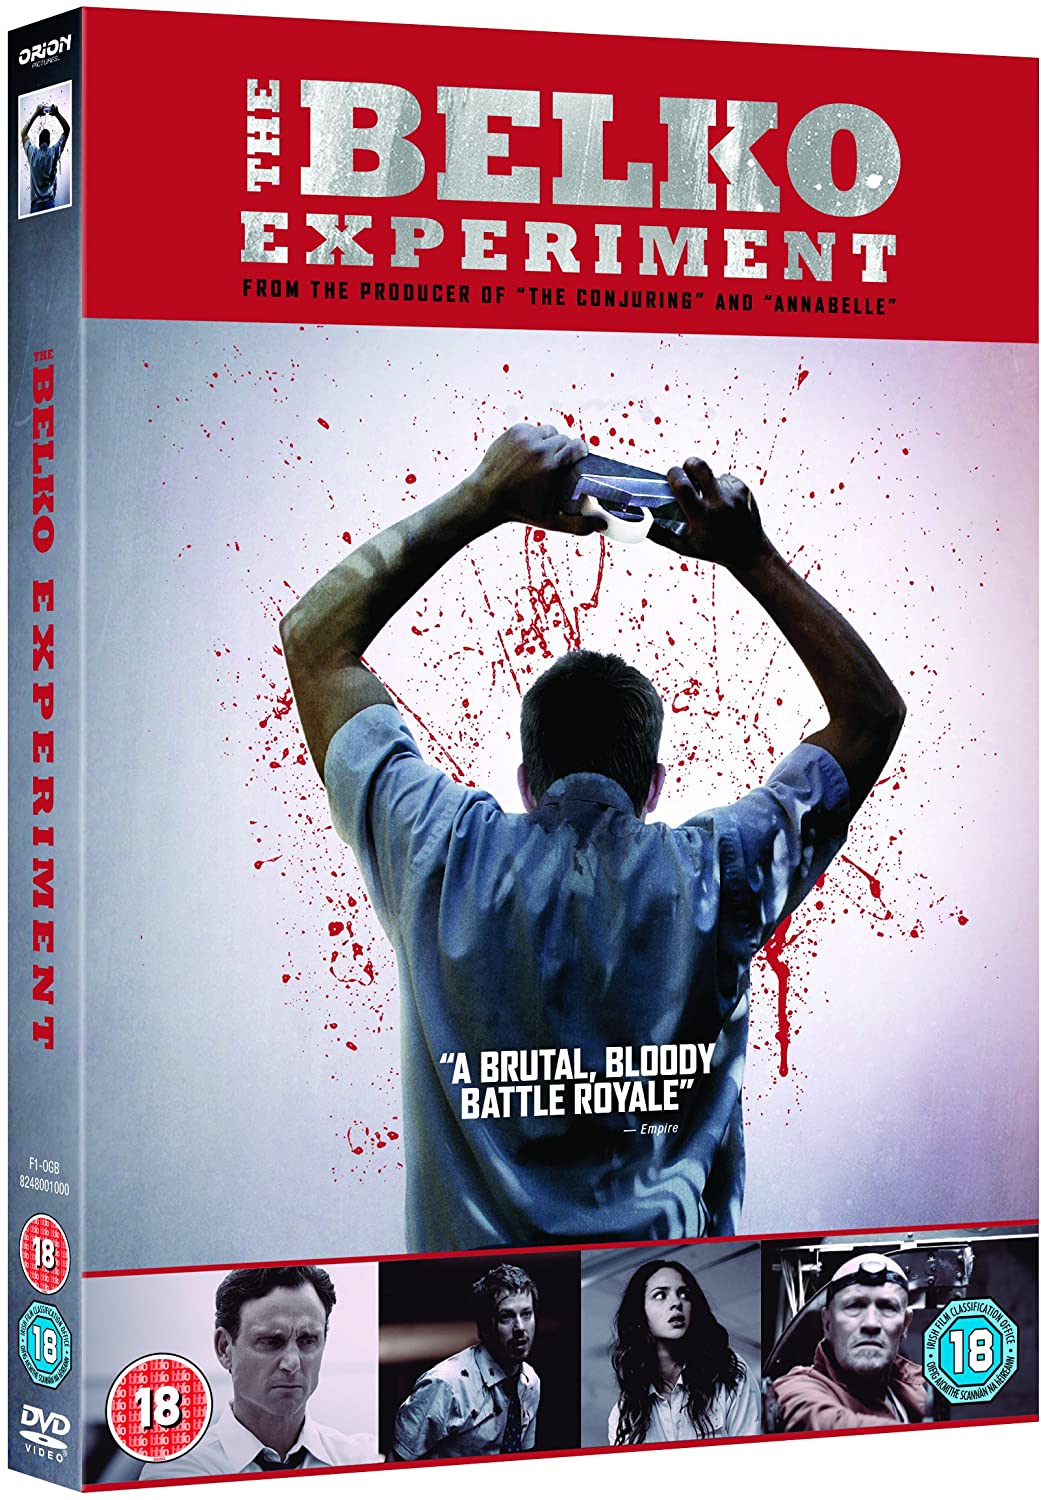 The Belko Experiment [2017] - Horror/Thriller [DVD]